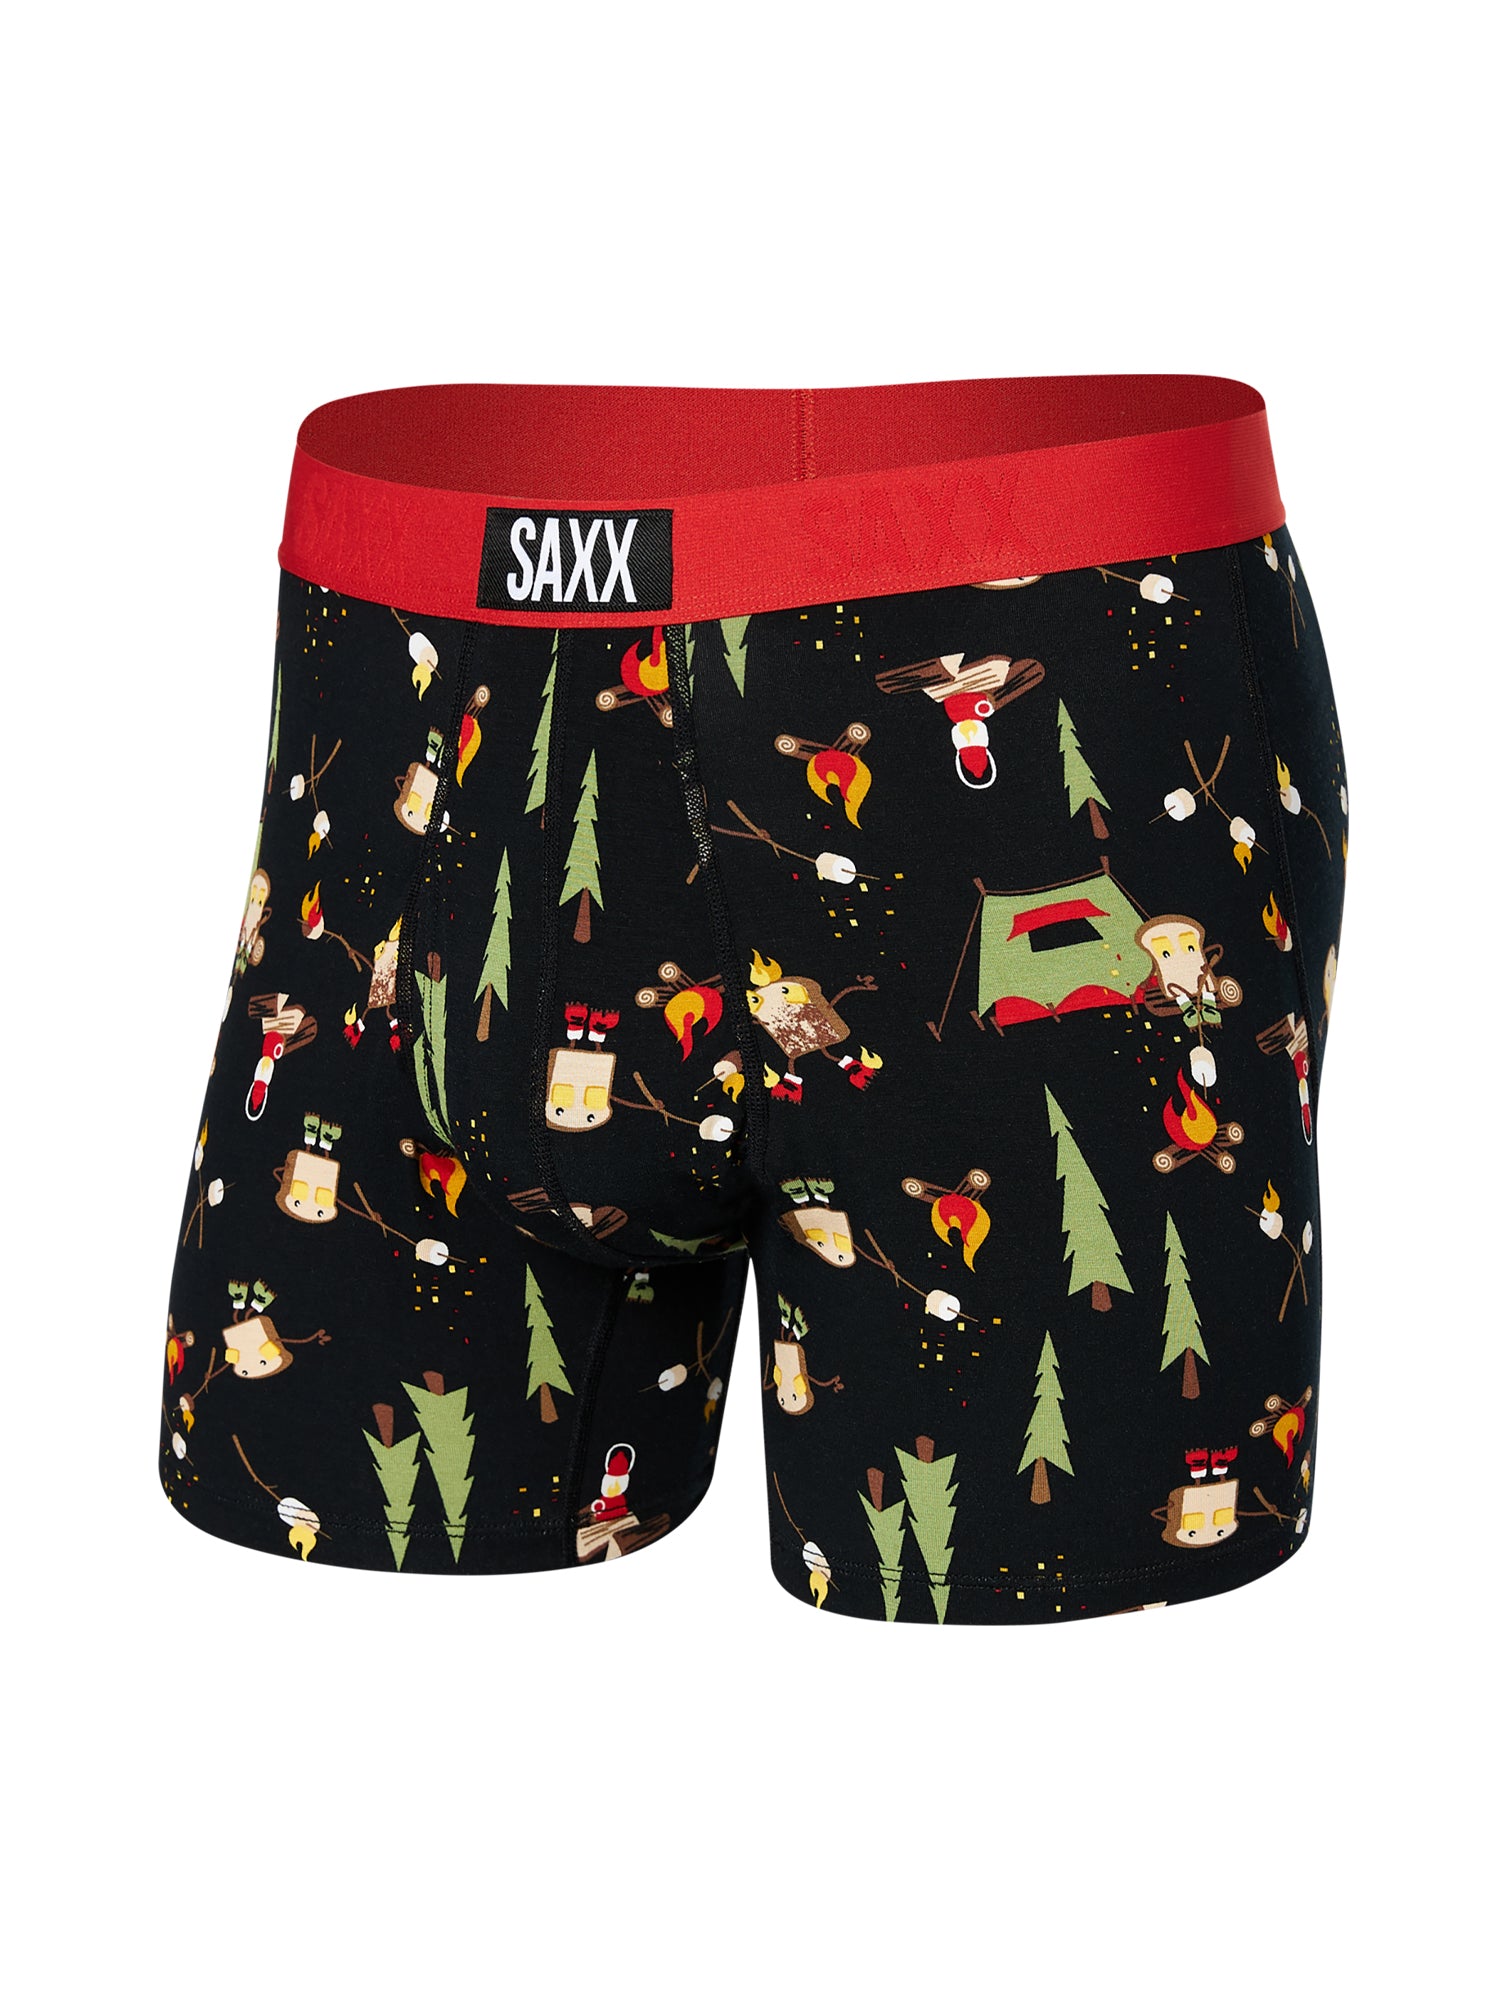 Saxx Underwear Mens Black Orange Daytripper Boxer Brief Fly 2-Pack Size M  49315 for sale online